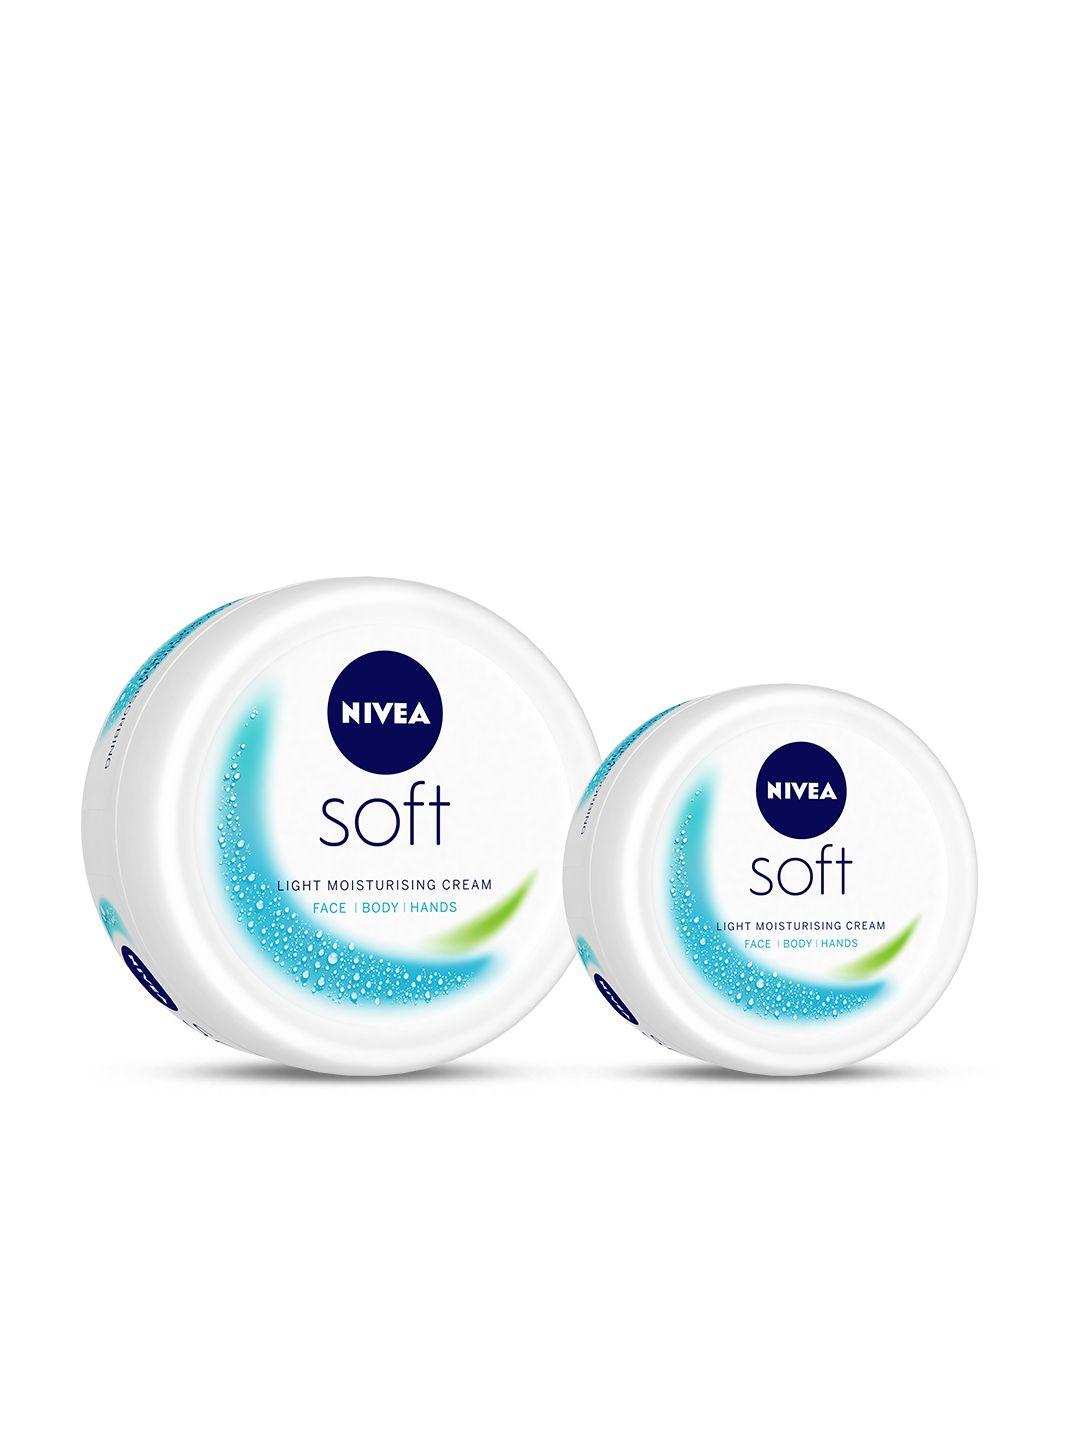 nivea set of 2 soft light moisturising cream for face body & hands - 200ml & 100ml